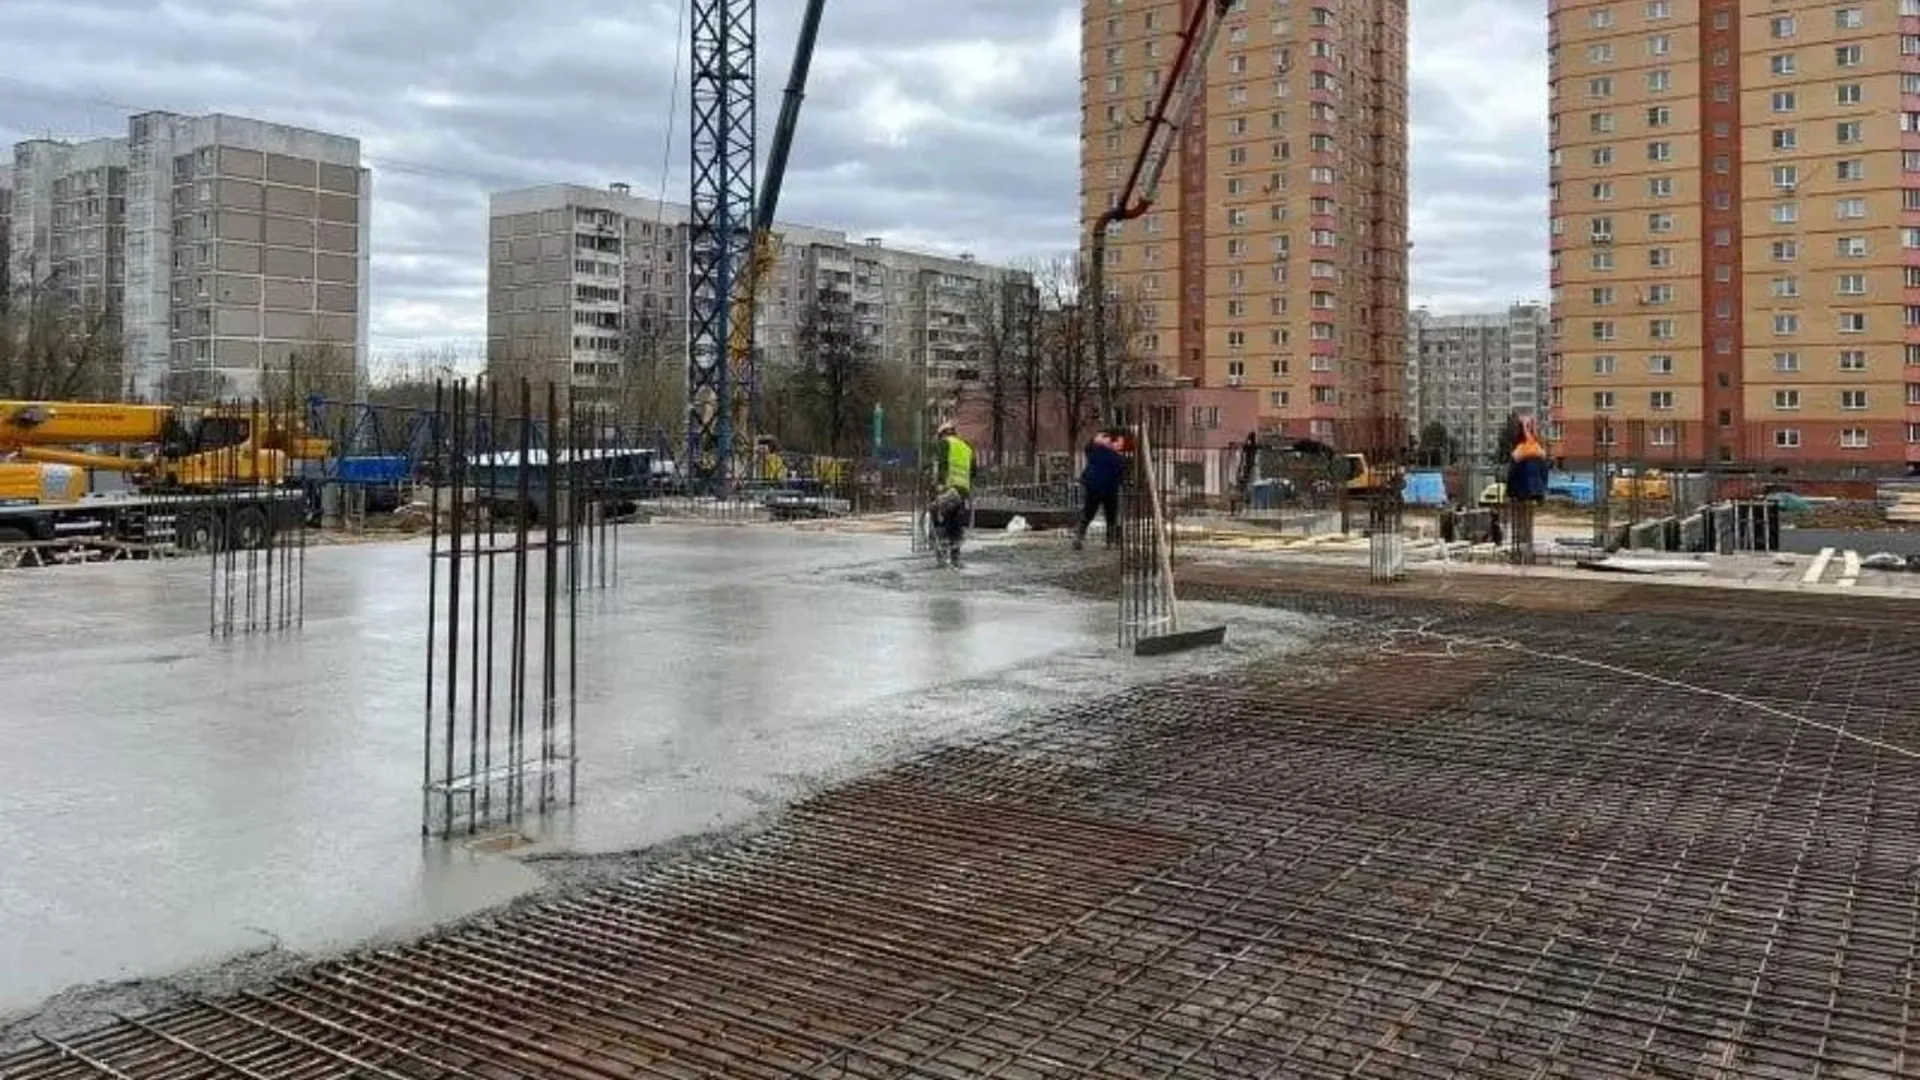 Тридцать пять рабочих занимаются заливкой бетона в основании нового корпуса школы в Чехове